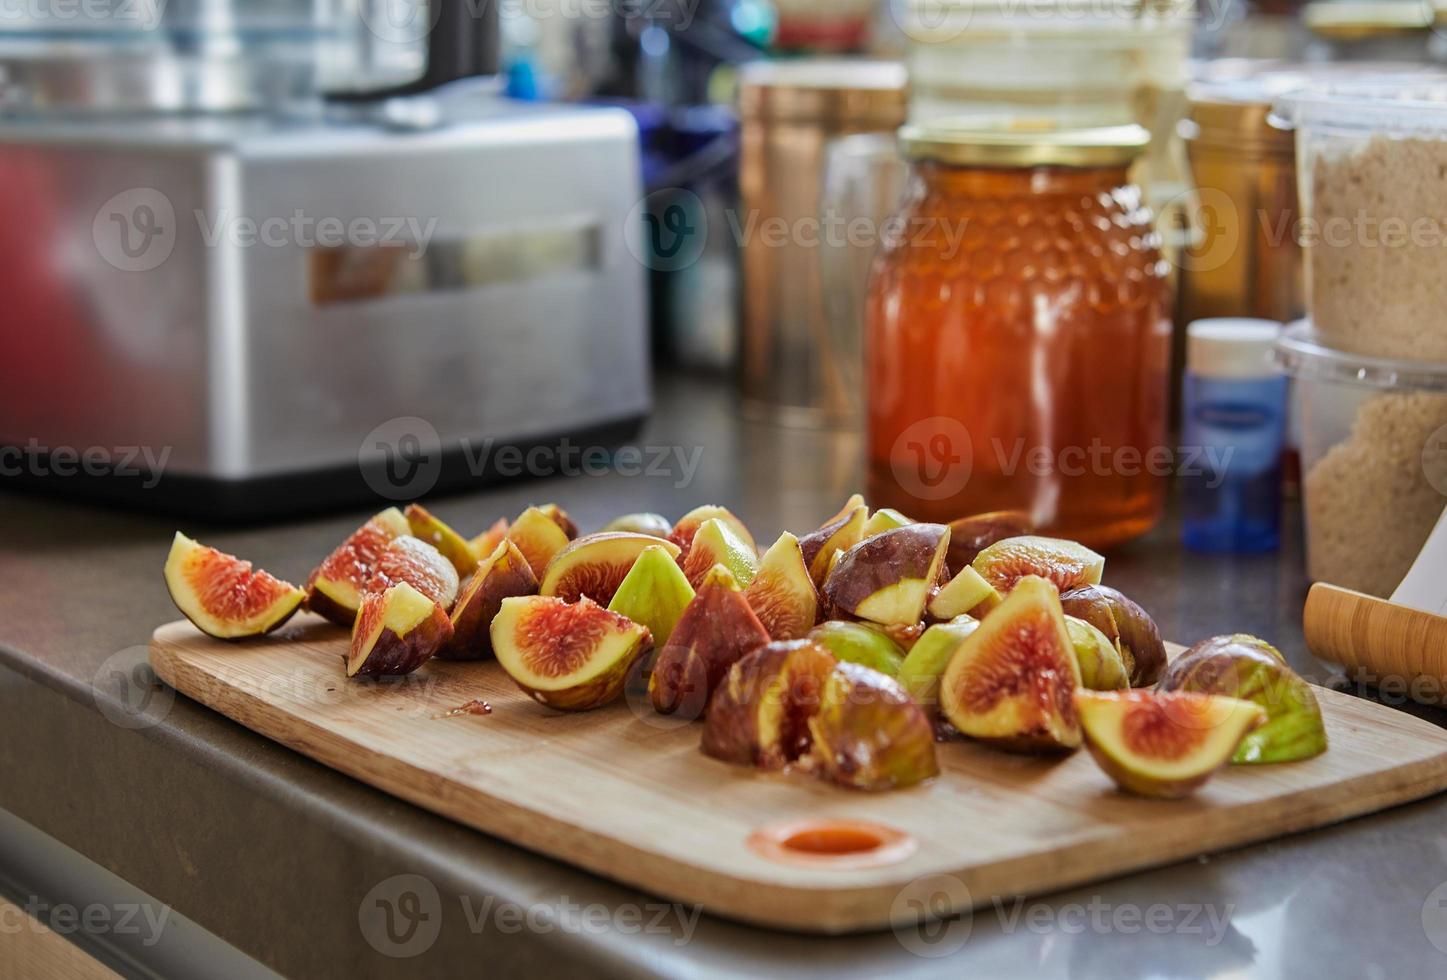 fikon ligger på träskiva i köket och burk honung att baka recept från internet foto